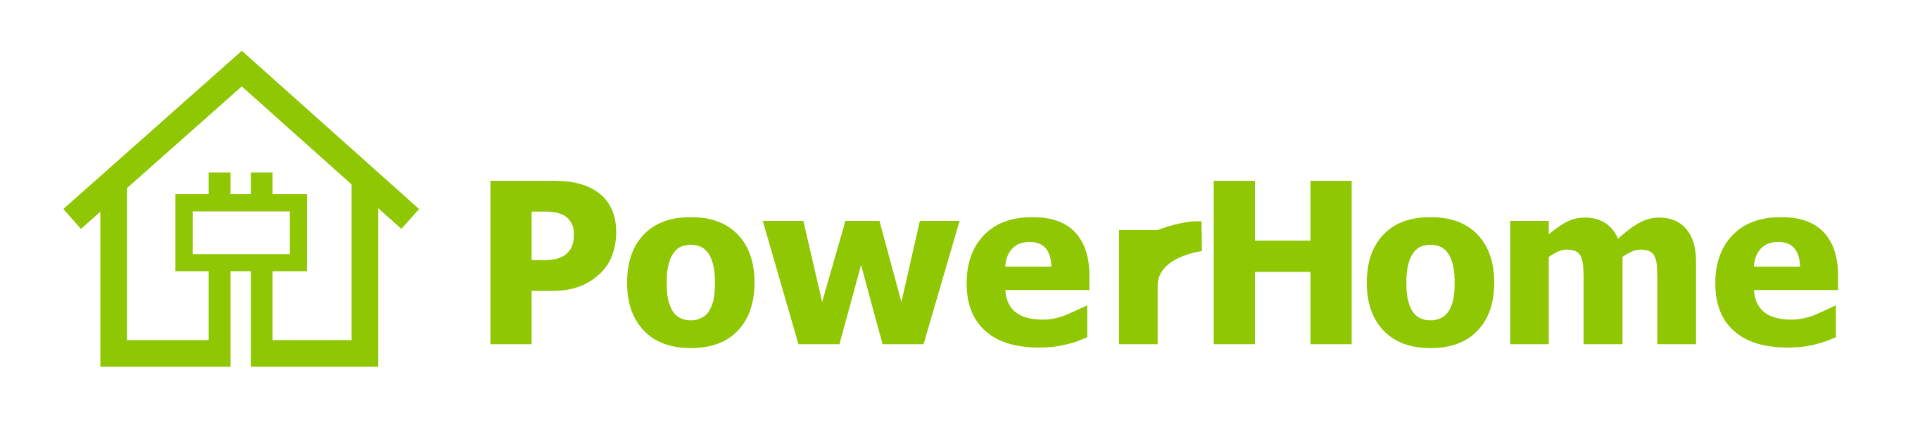 PowerHome.com